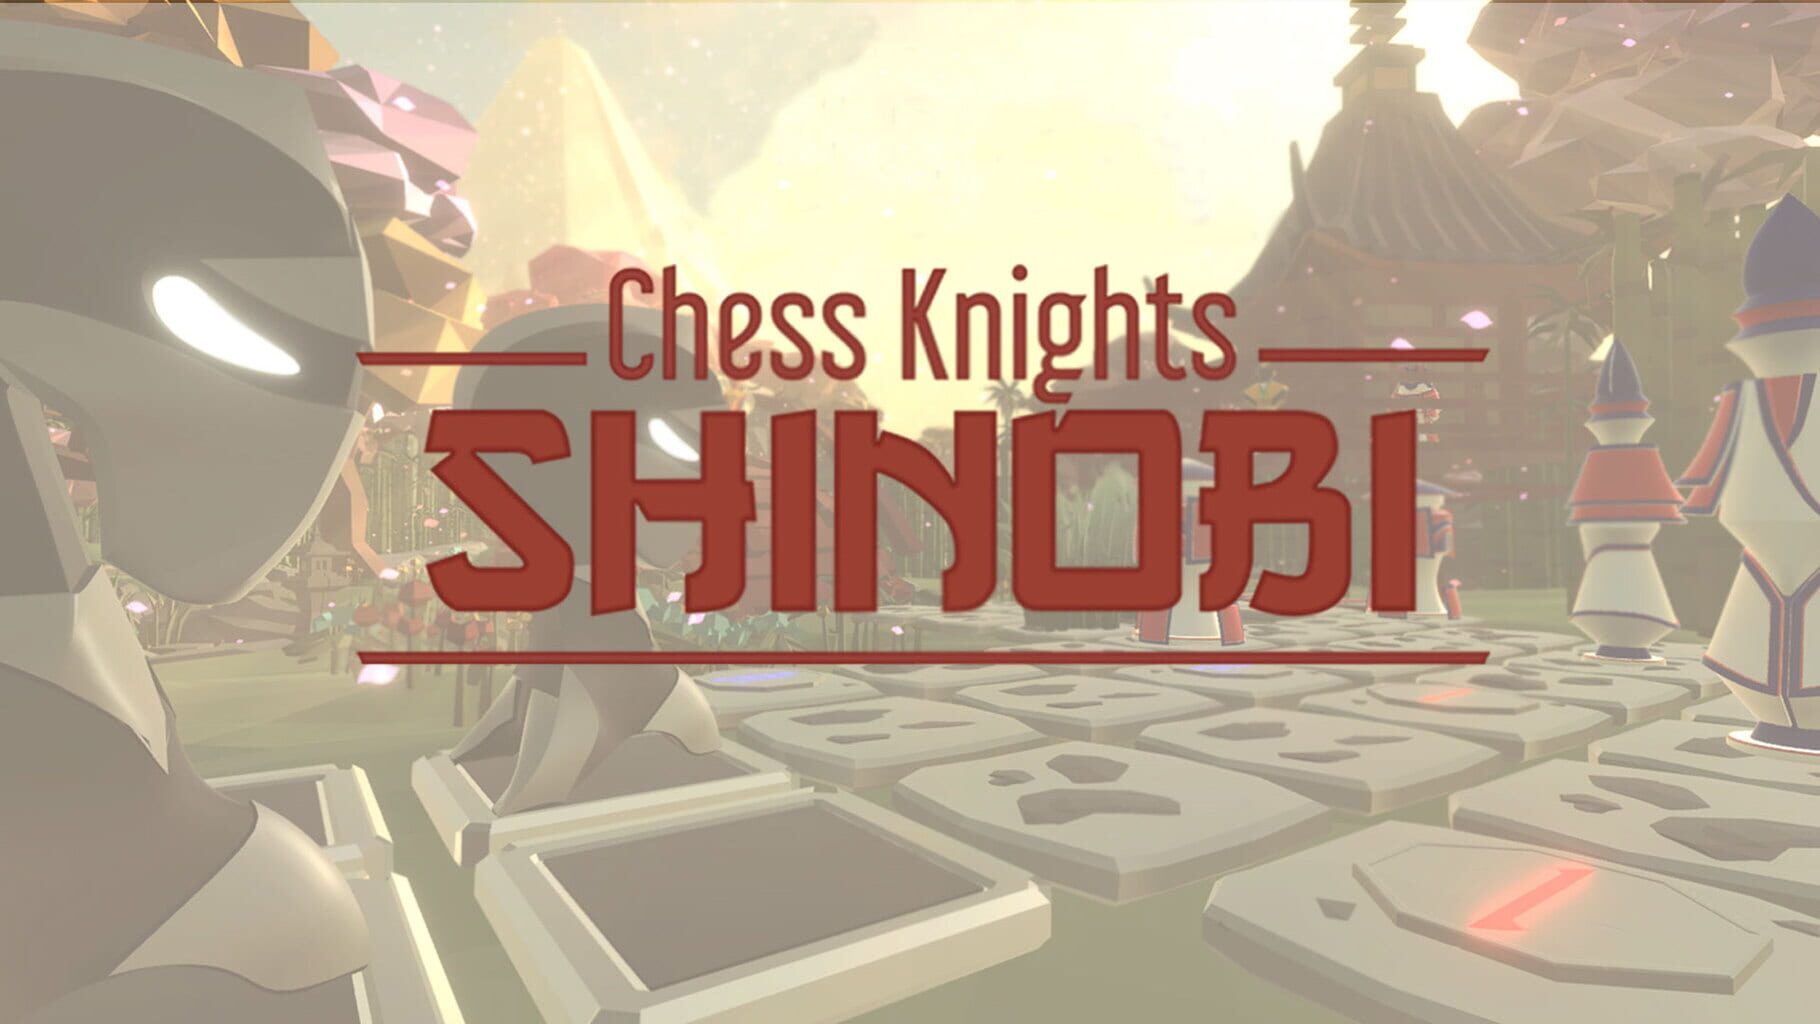 Chess Knights: Shinobi artwork